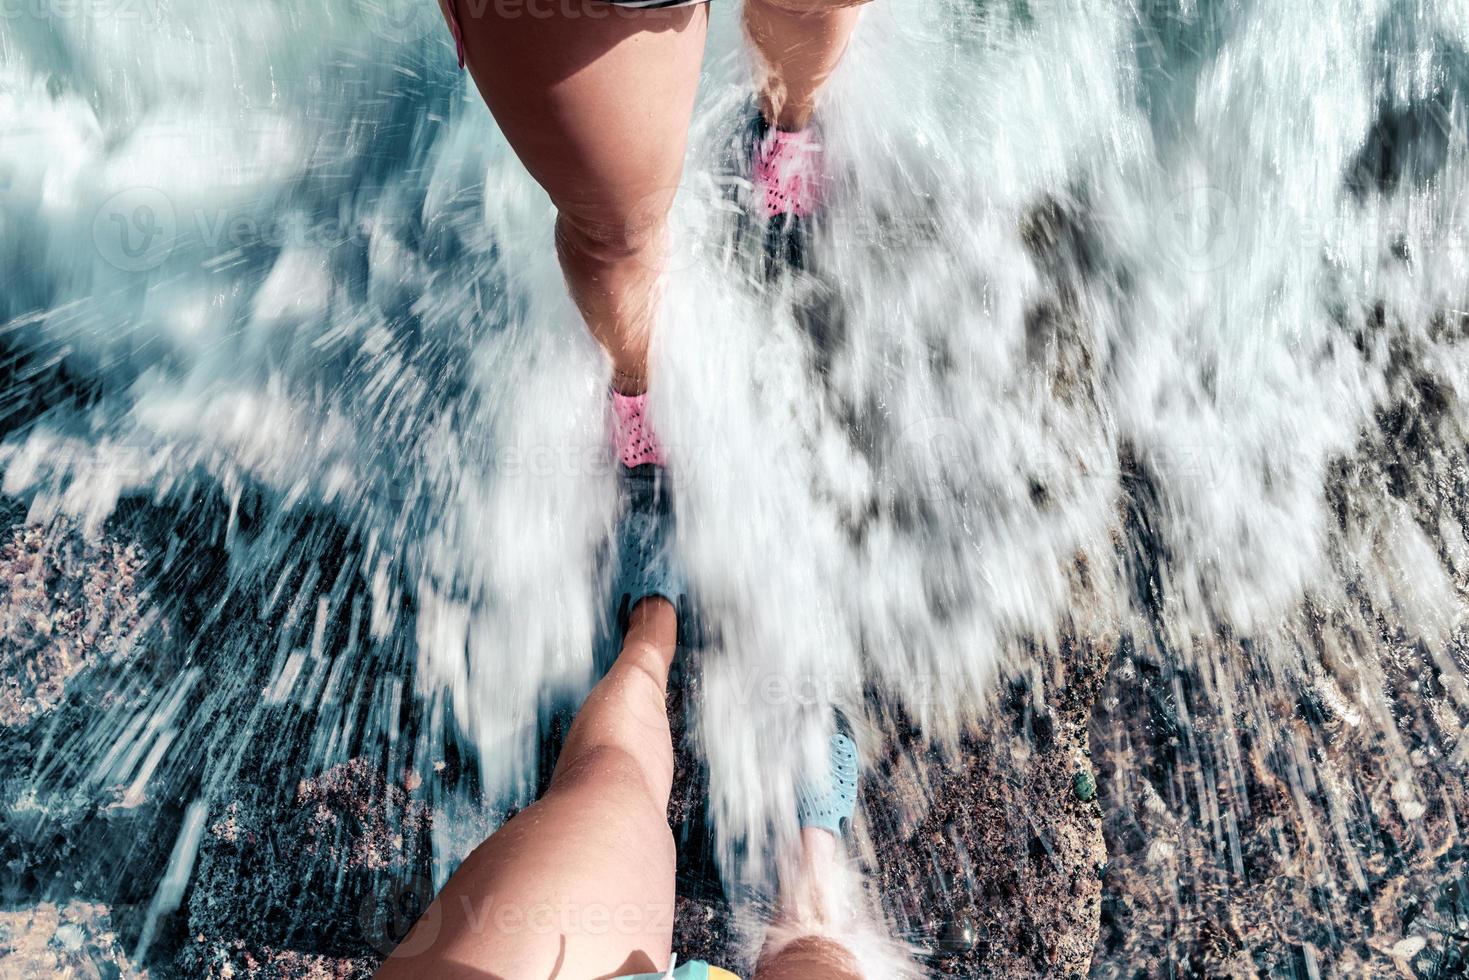 par som står tillsammans på stenstranden. fötter par täckta av vatten våg vid havet. foto